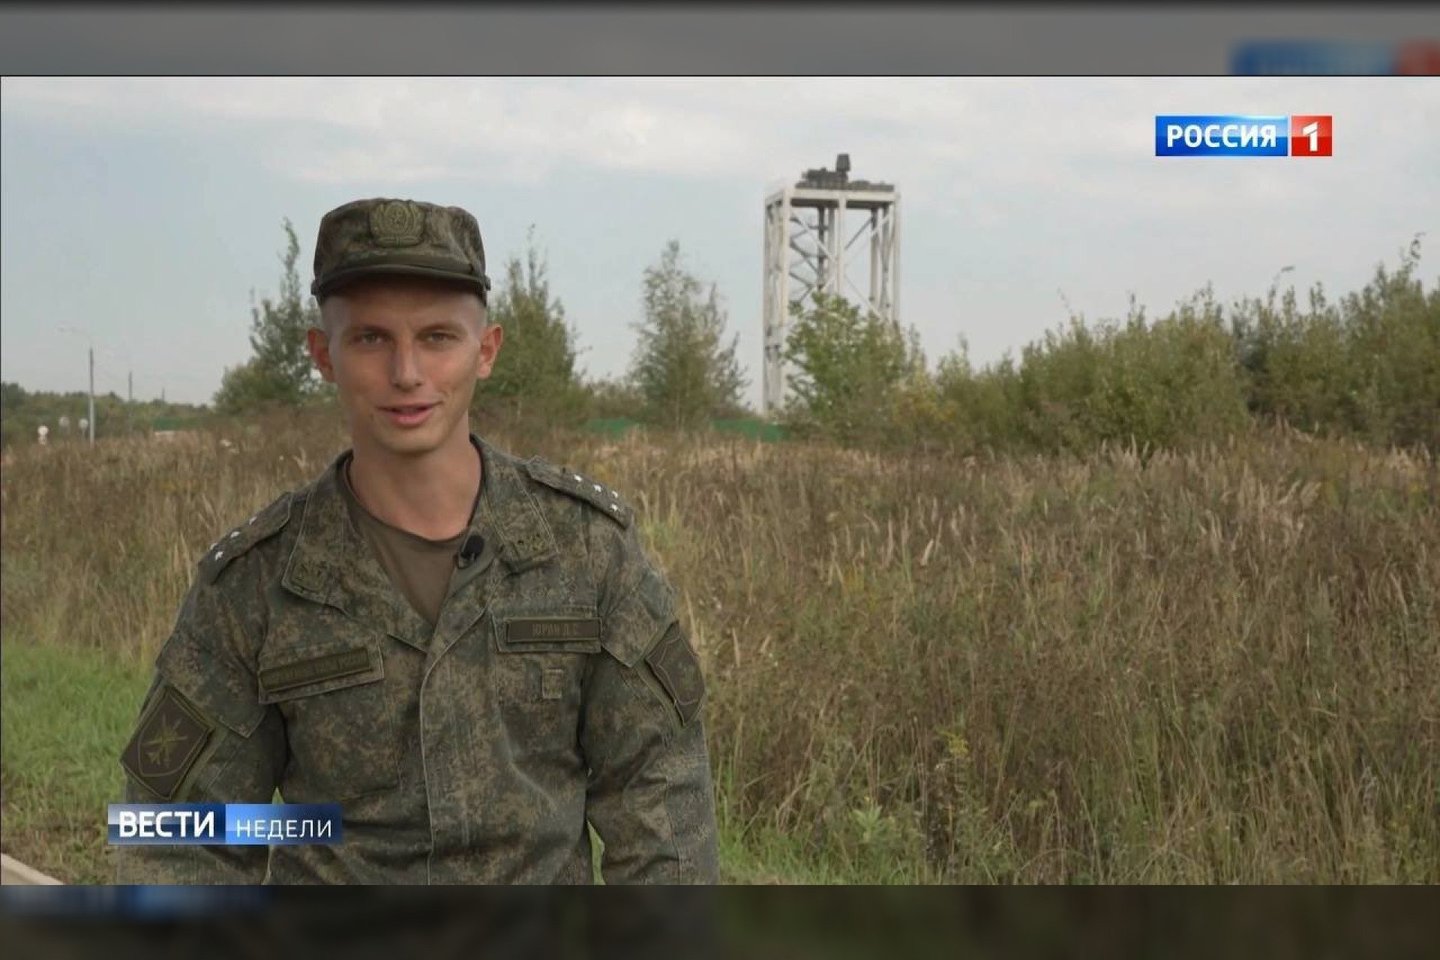  Pasak valstybinės televizijos „Rossija-24“ vaizdo siužeto, Rusijos kariuomenė stengiasi užpildyti oro gynybos spragas, esančias platesnėje teritorijoje aplink Rusijos sostinę.<br> Stopkadras